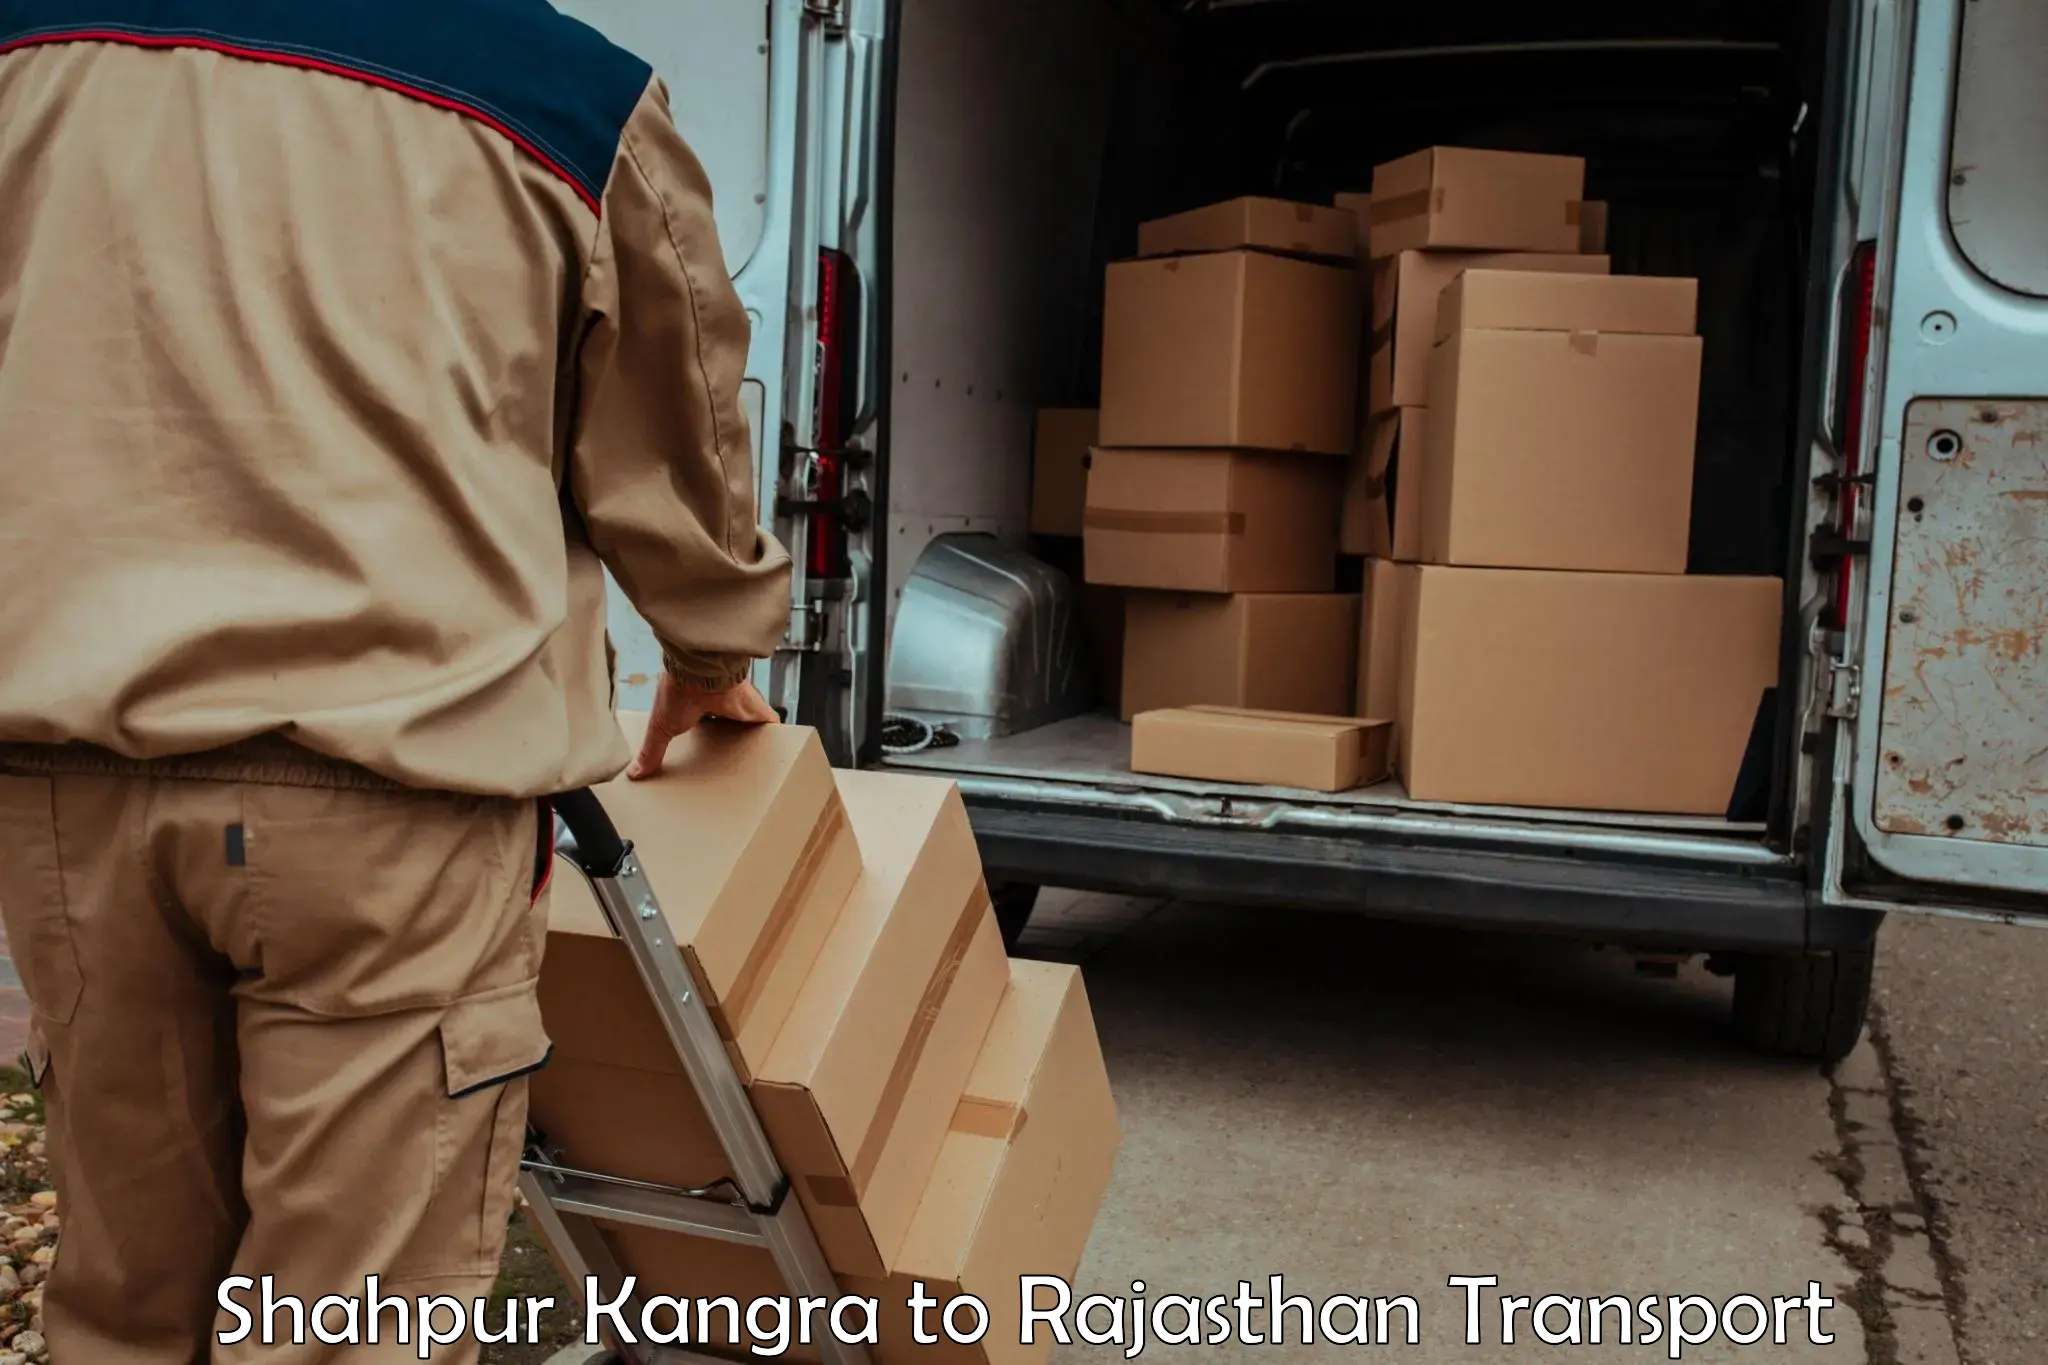 Shipping partner Shahpur Kangra to Fatehpur Sikar